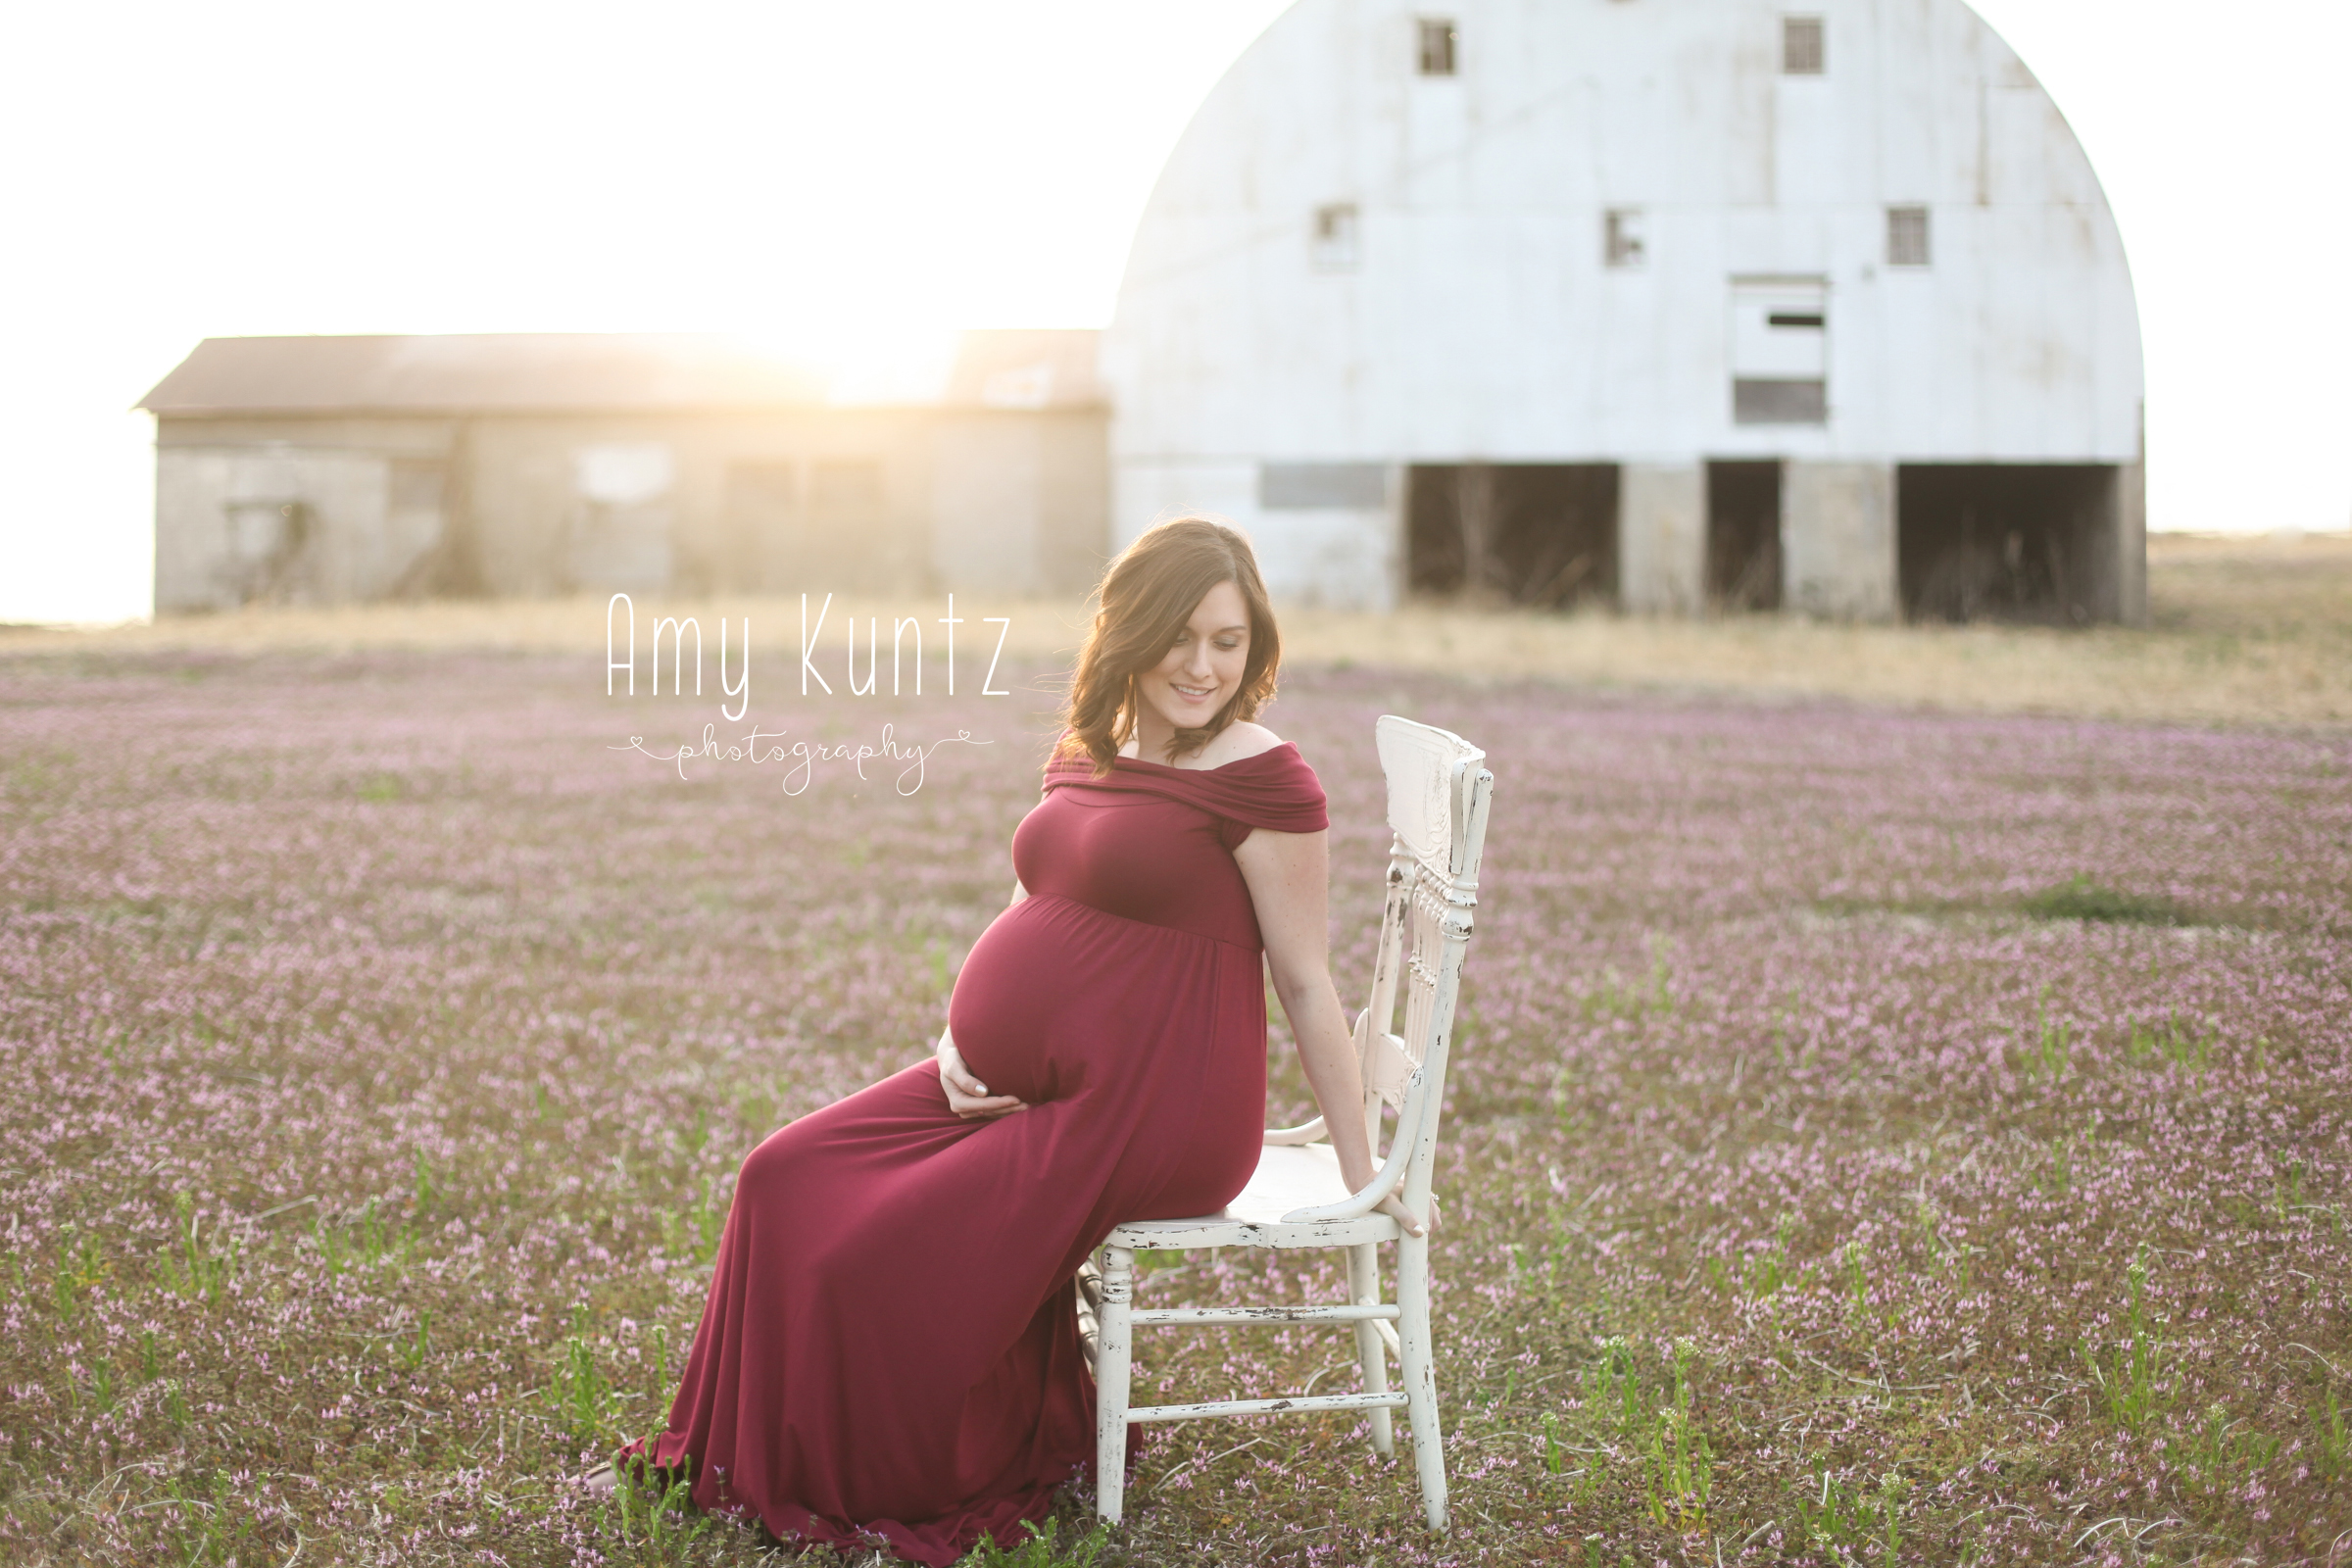 Maternity Photo Shoot in Kansas City - Amy Kuntz Photography